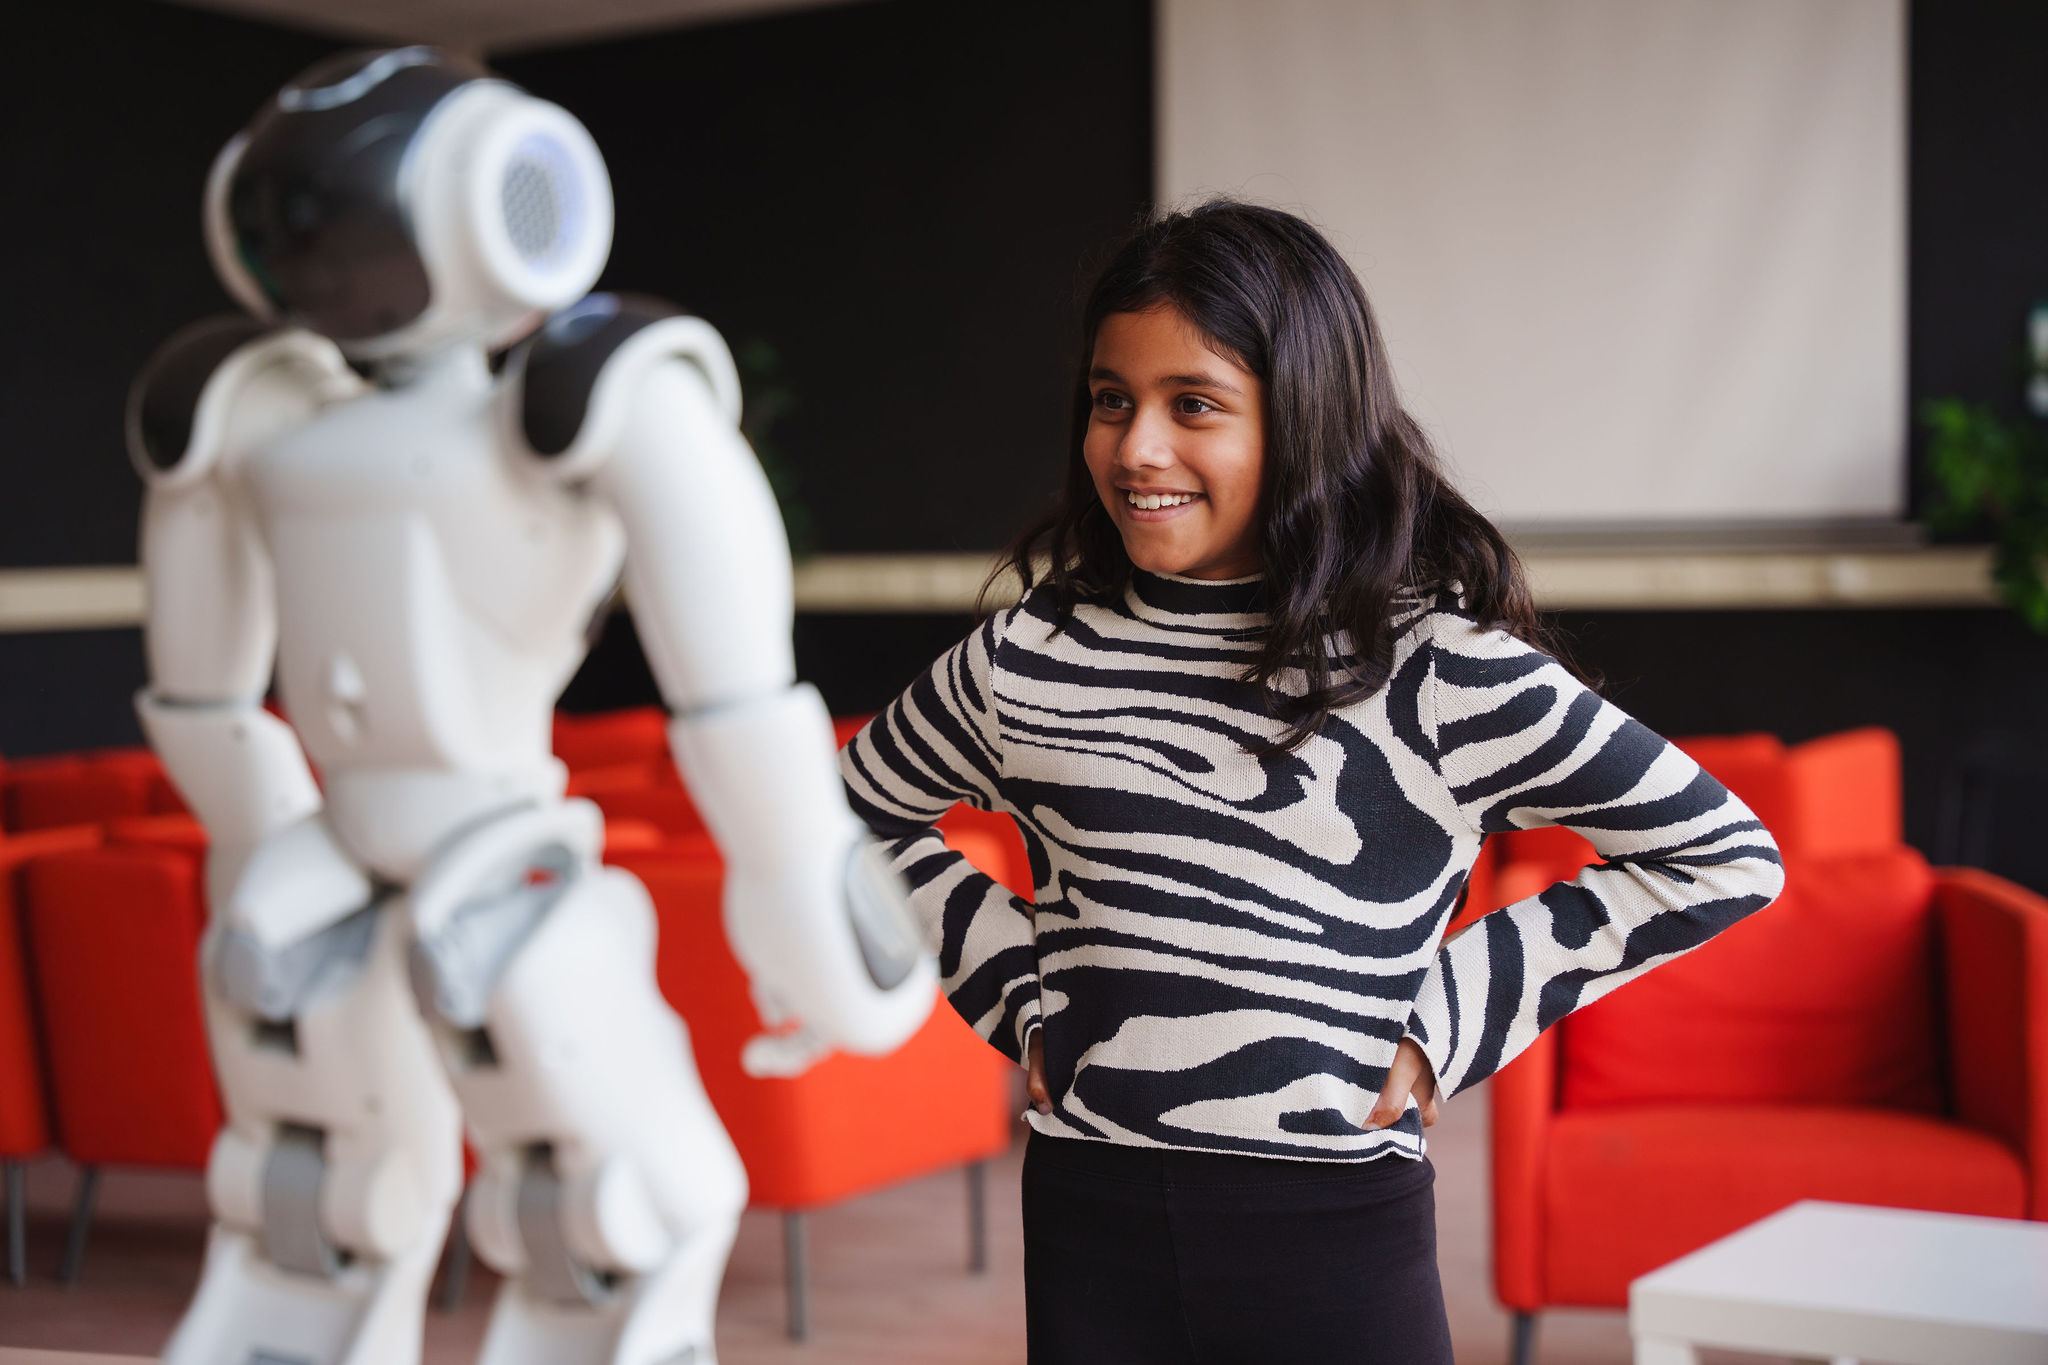 meisje leert van robot in het onderwijs vaardigheden voor toekomstige carrière